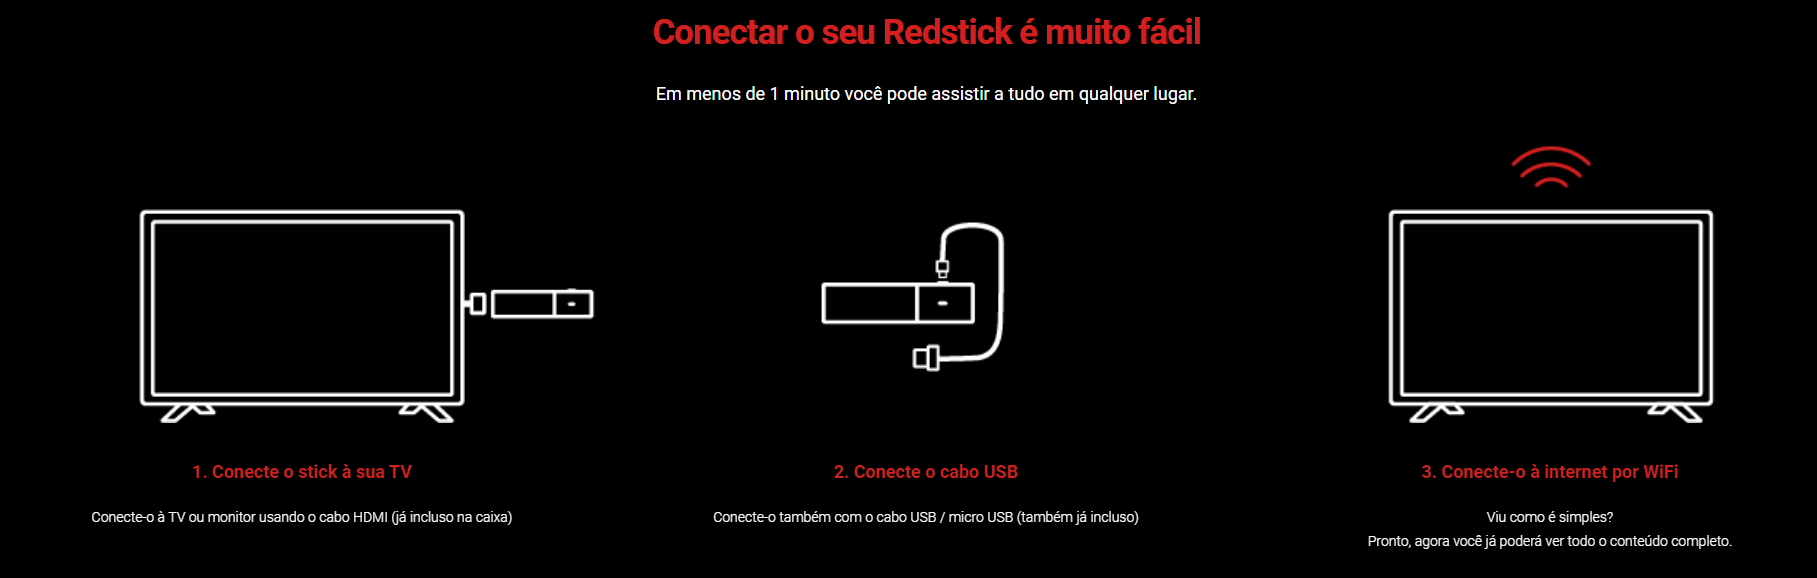 Red Stick 2 4k Redstick - Novo Lançamento Redplay com Comando de